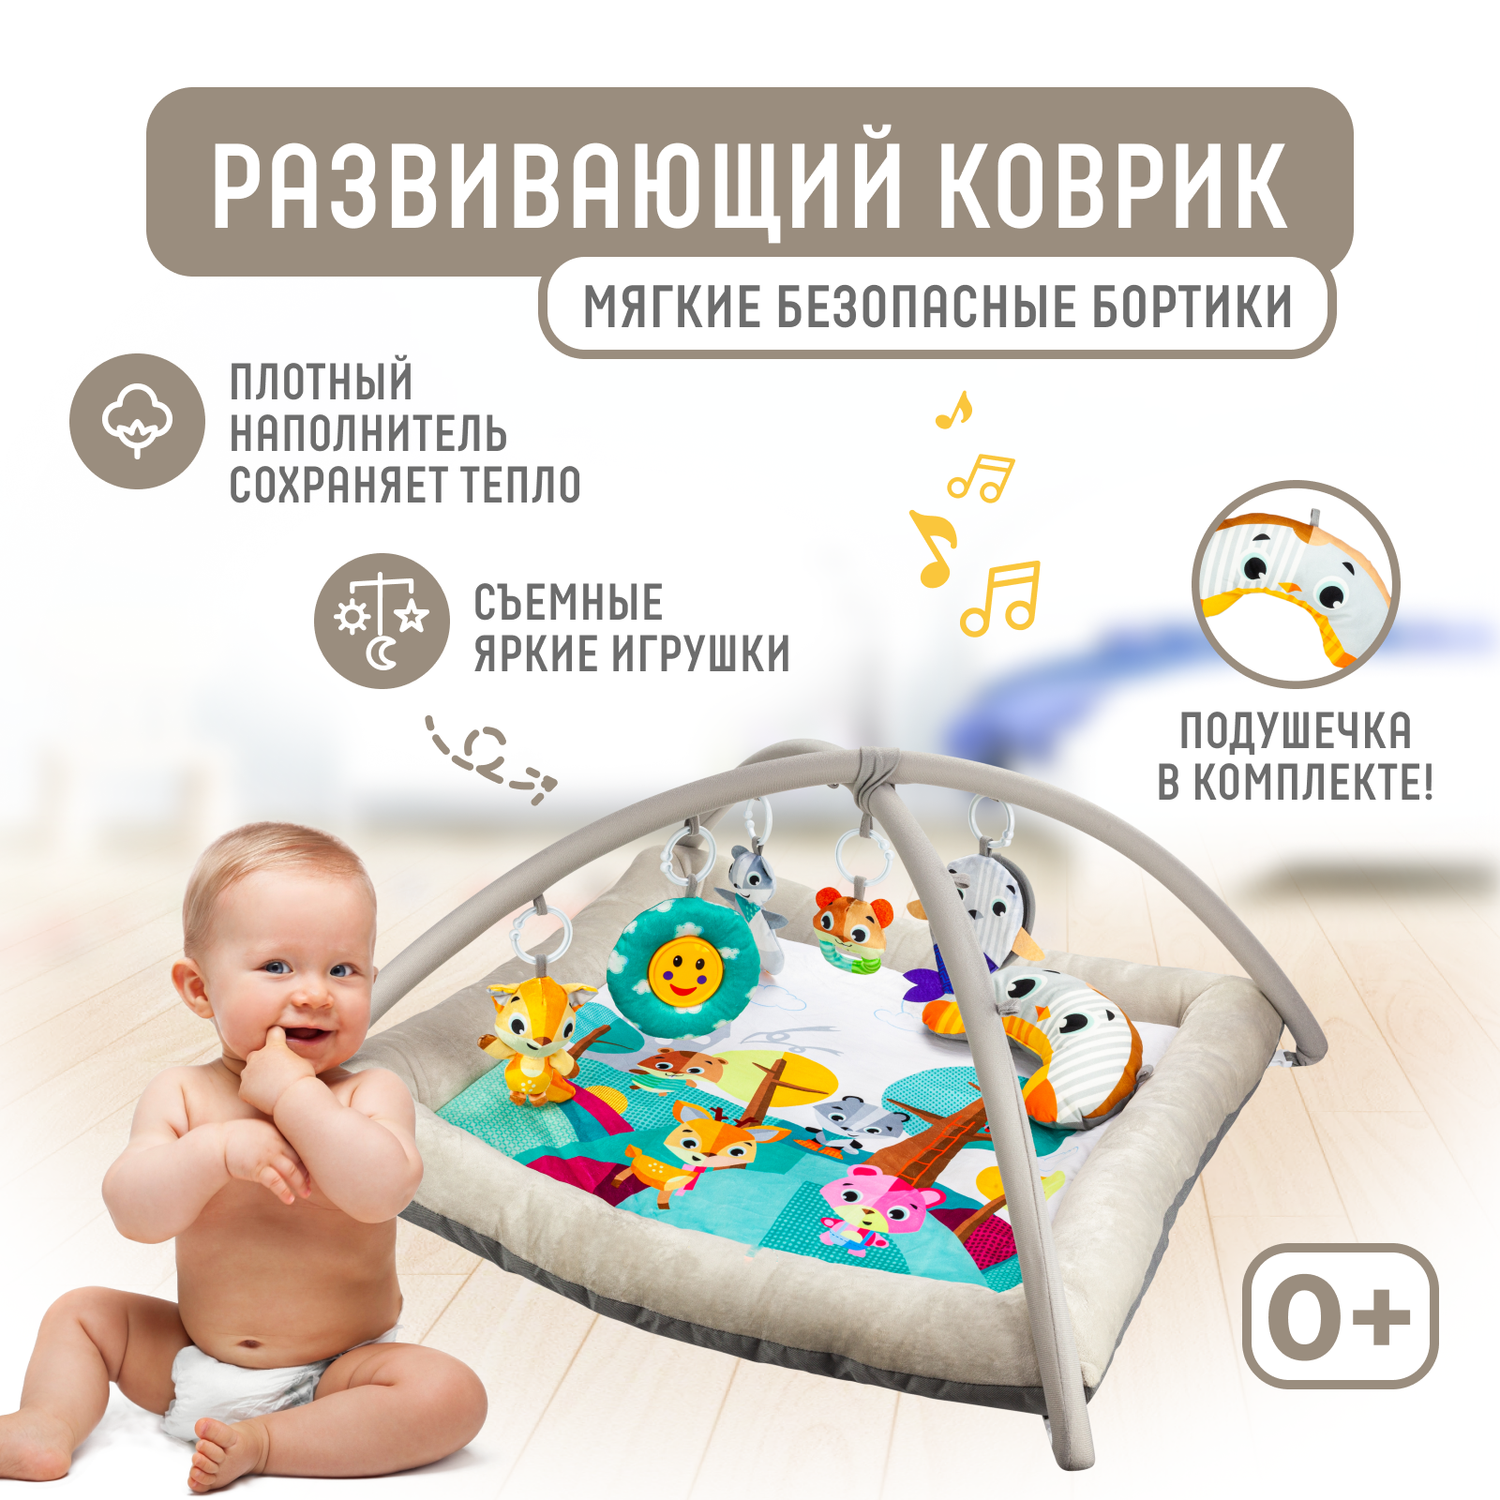 Развивающий игровой коврик Solmax для новорожденных с дугой и игрушками бежевый/голубой - фото 1